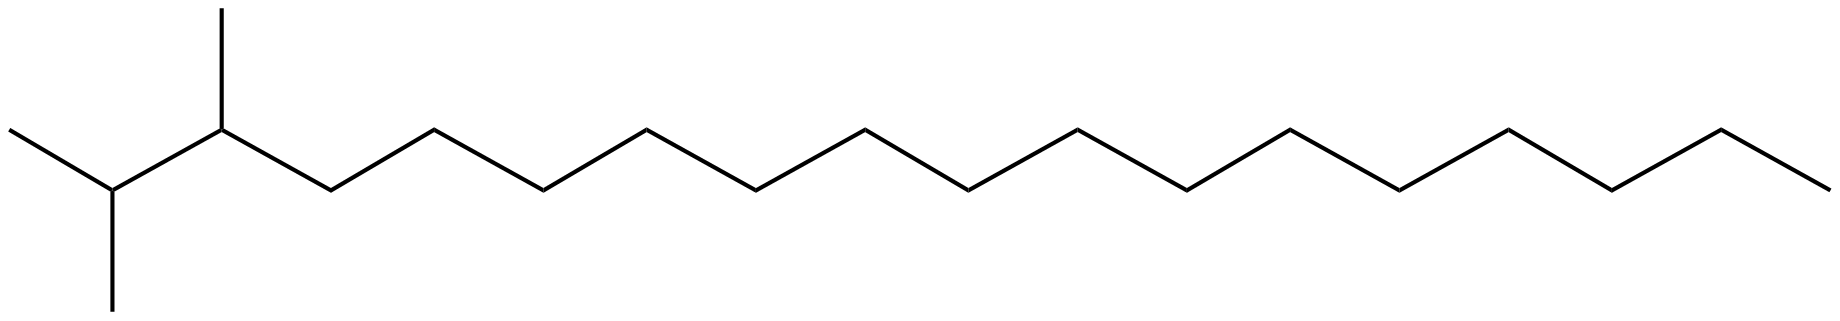 Image of octadecane, 2,3-dimethyl-